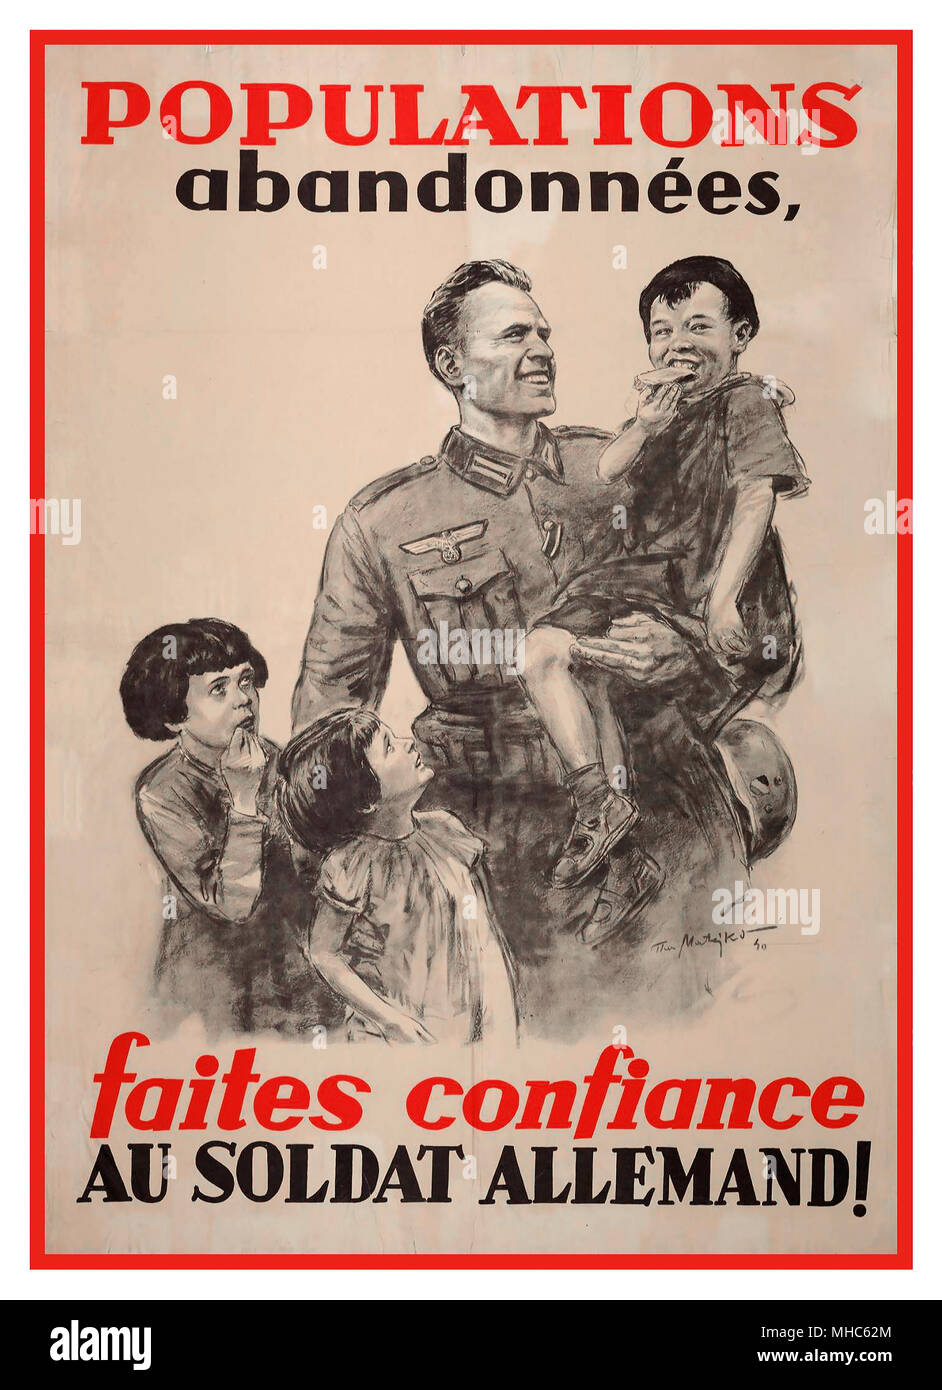 1940 Poster de propagande nazie d’époque WW2 « populations abandonnées »; « faites confiance au soldat allemand ! » Affiche de propagande allemande sur les murs de France après l'occupation de la France par l'Allemagne nazie Banque D'Images